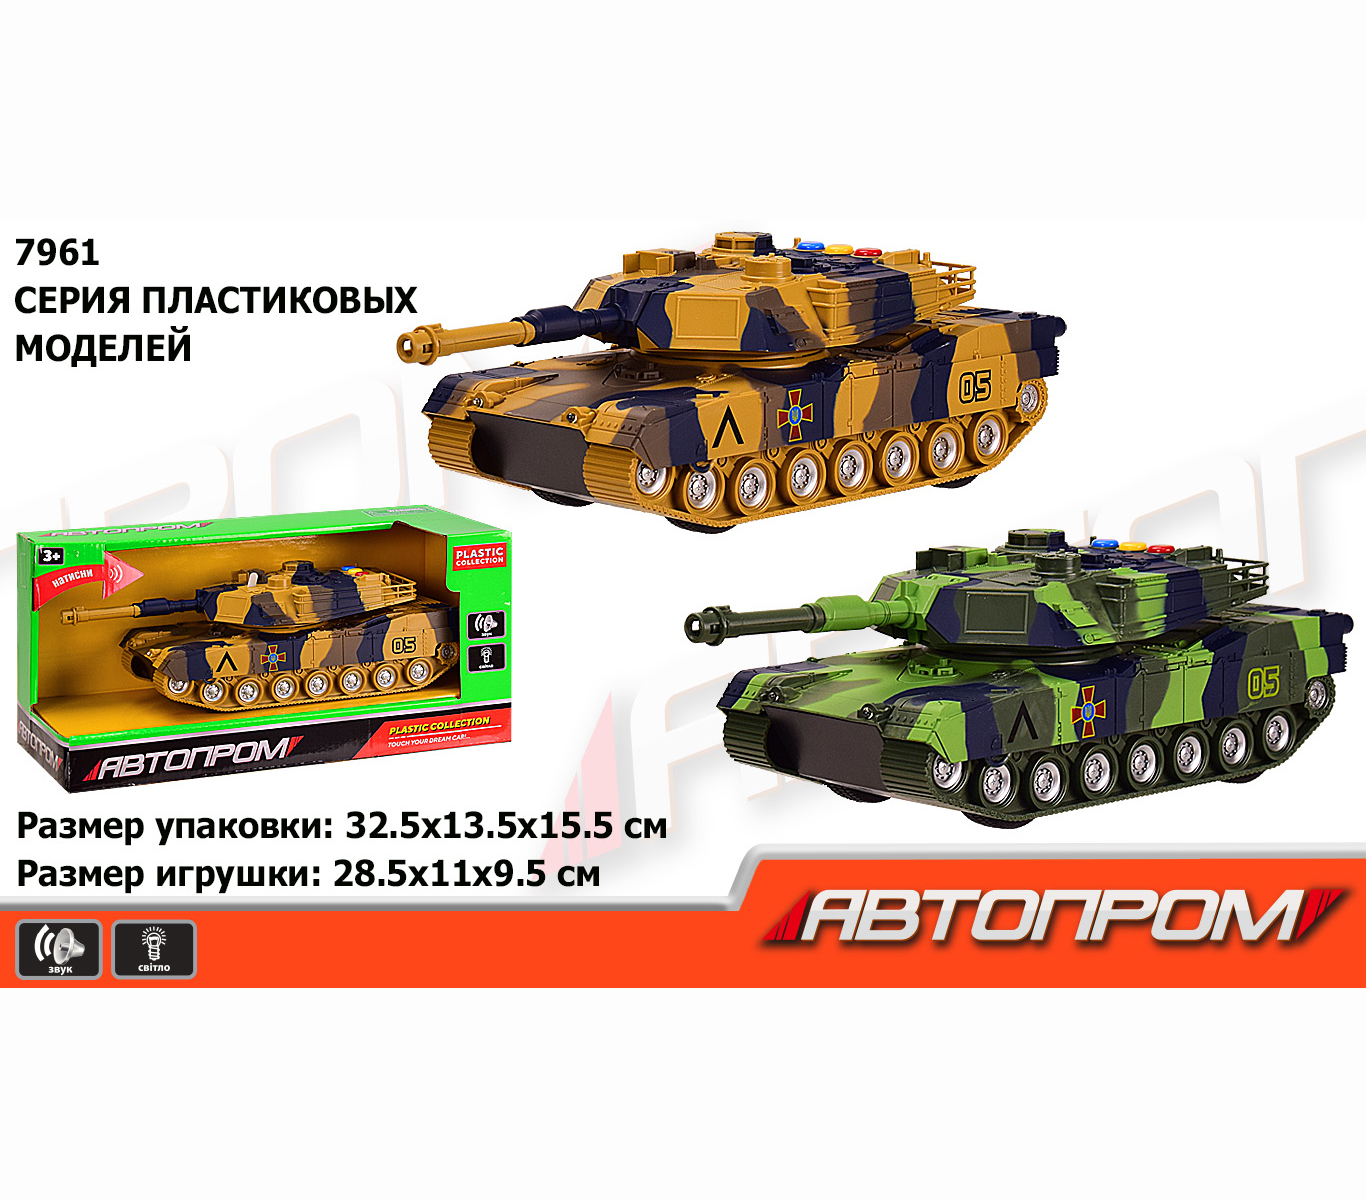 Модель військового танка із пластику 'Автопром'